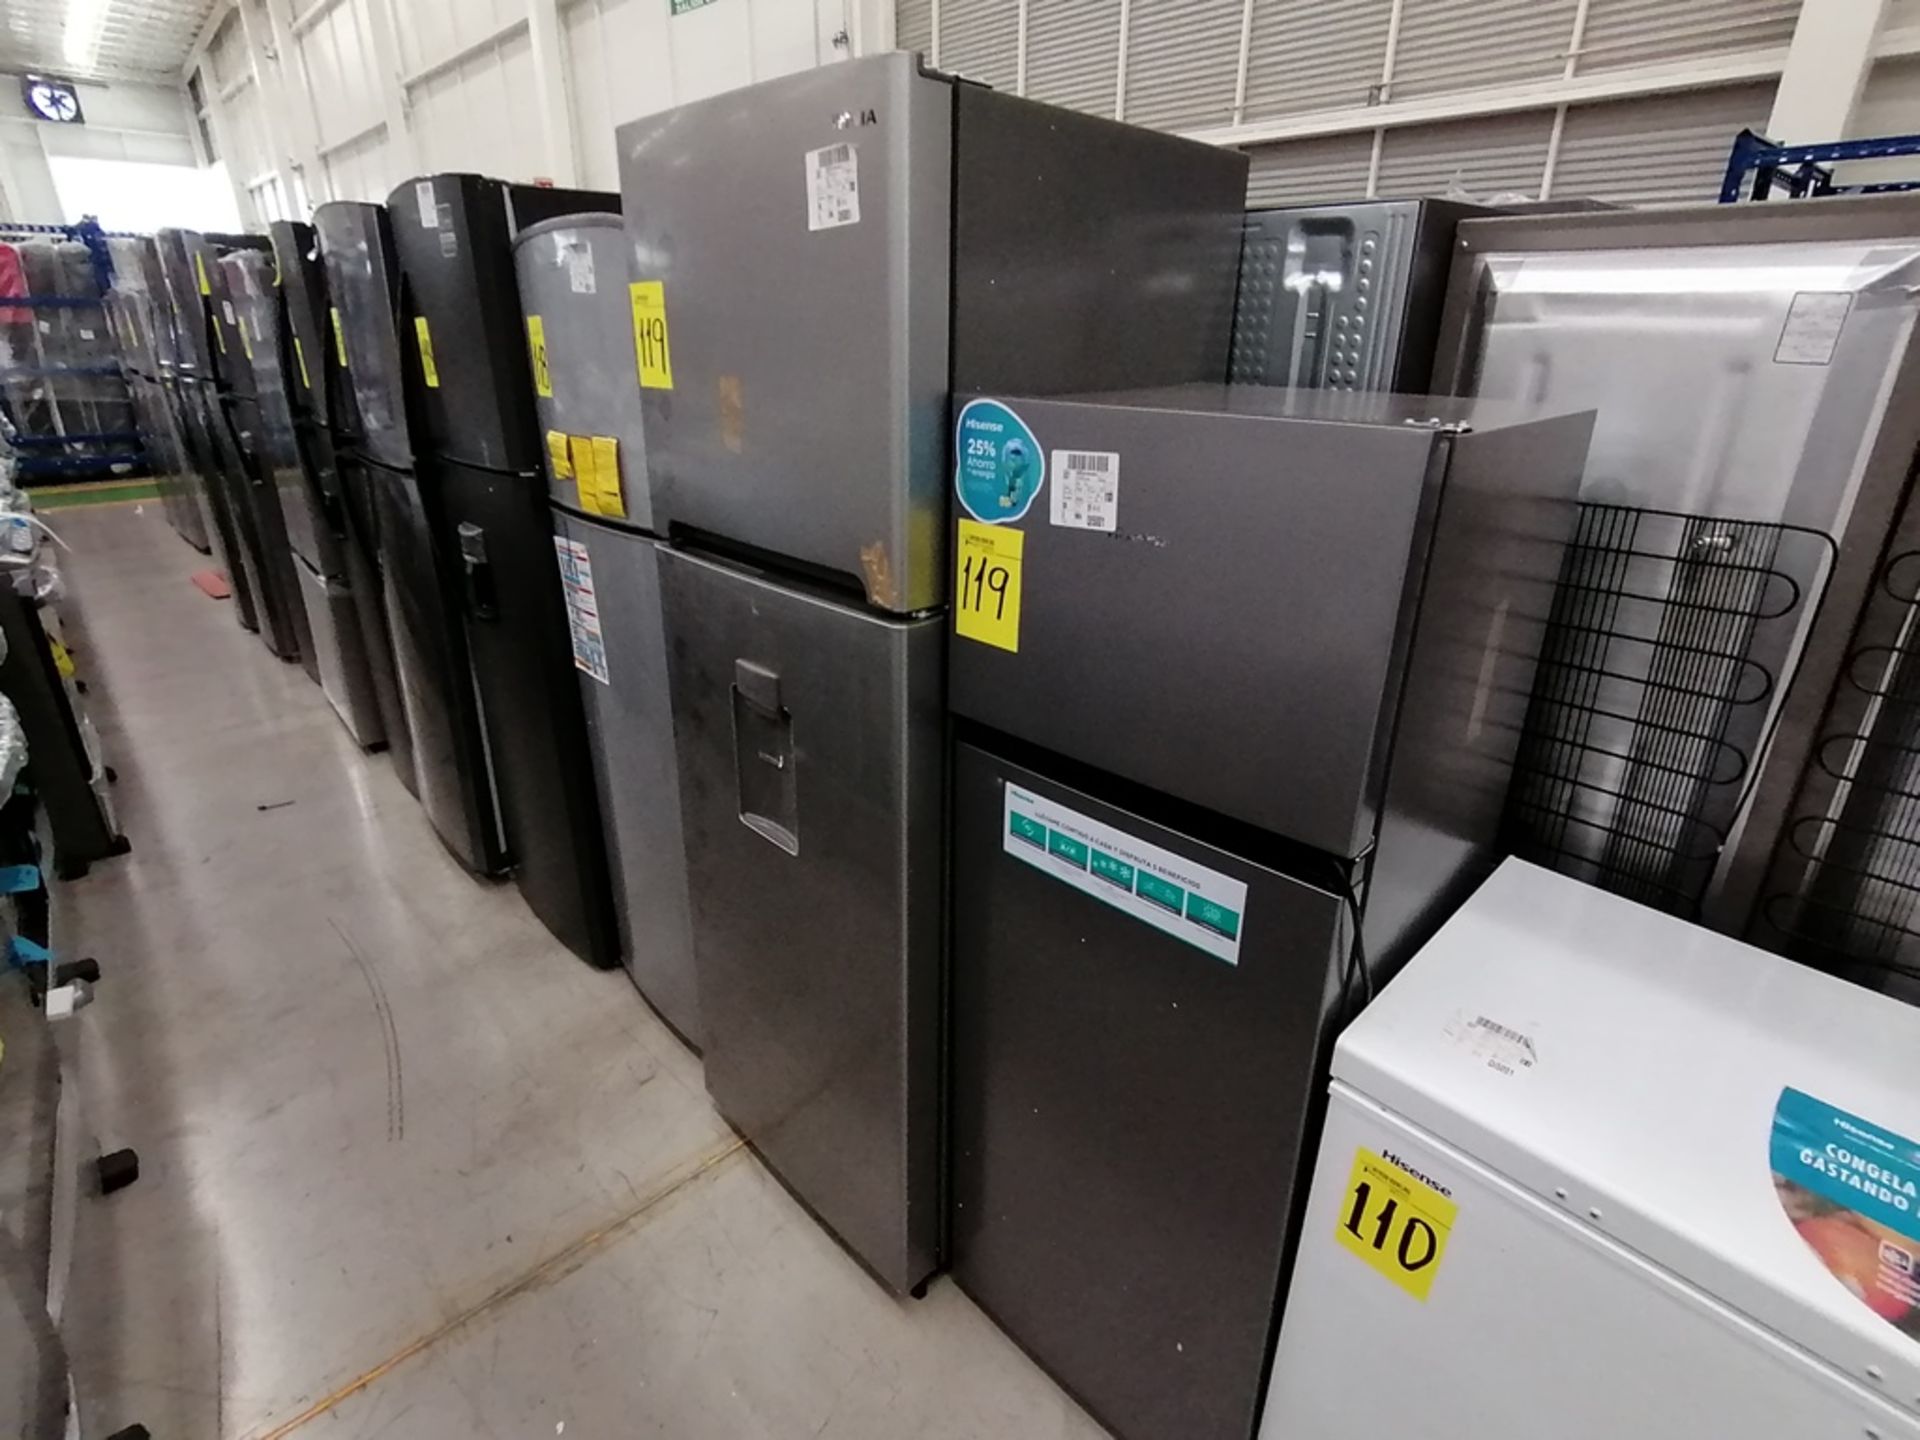 Lote de 2 refrigeradores incluye: 1 Refrigerador, Marca Winia, Modelo DFR40510GNDG, Serie MR21YN107 - Image 8 of 15